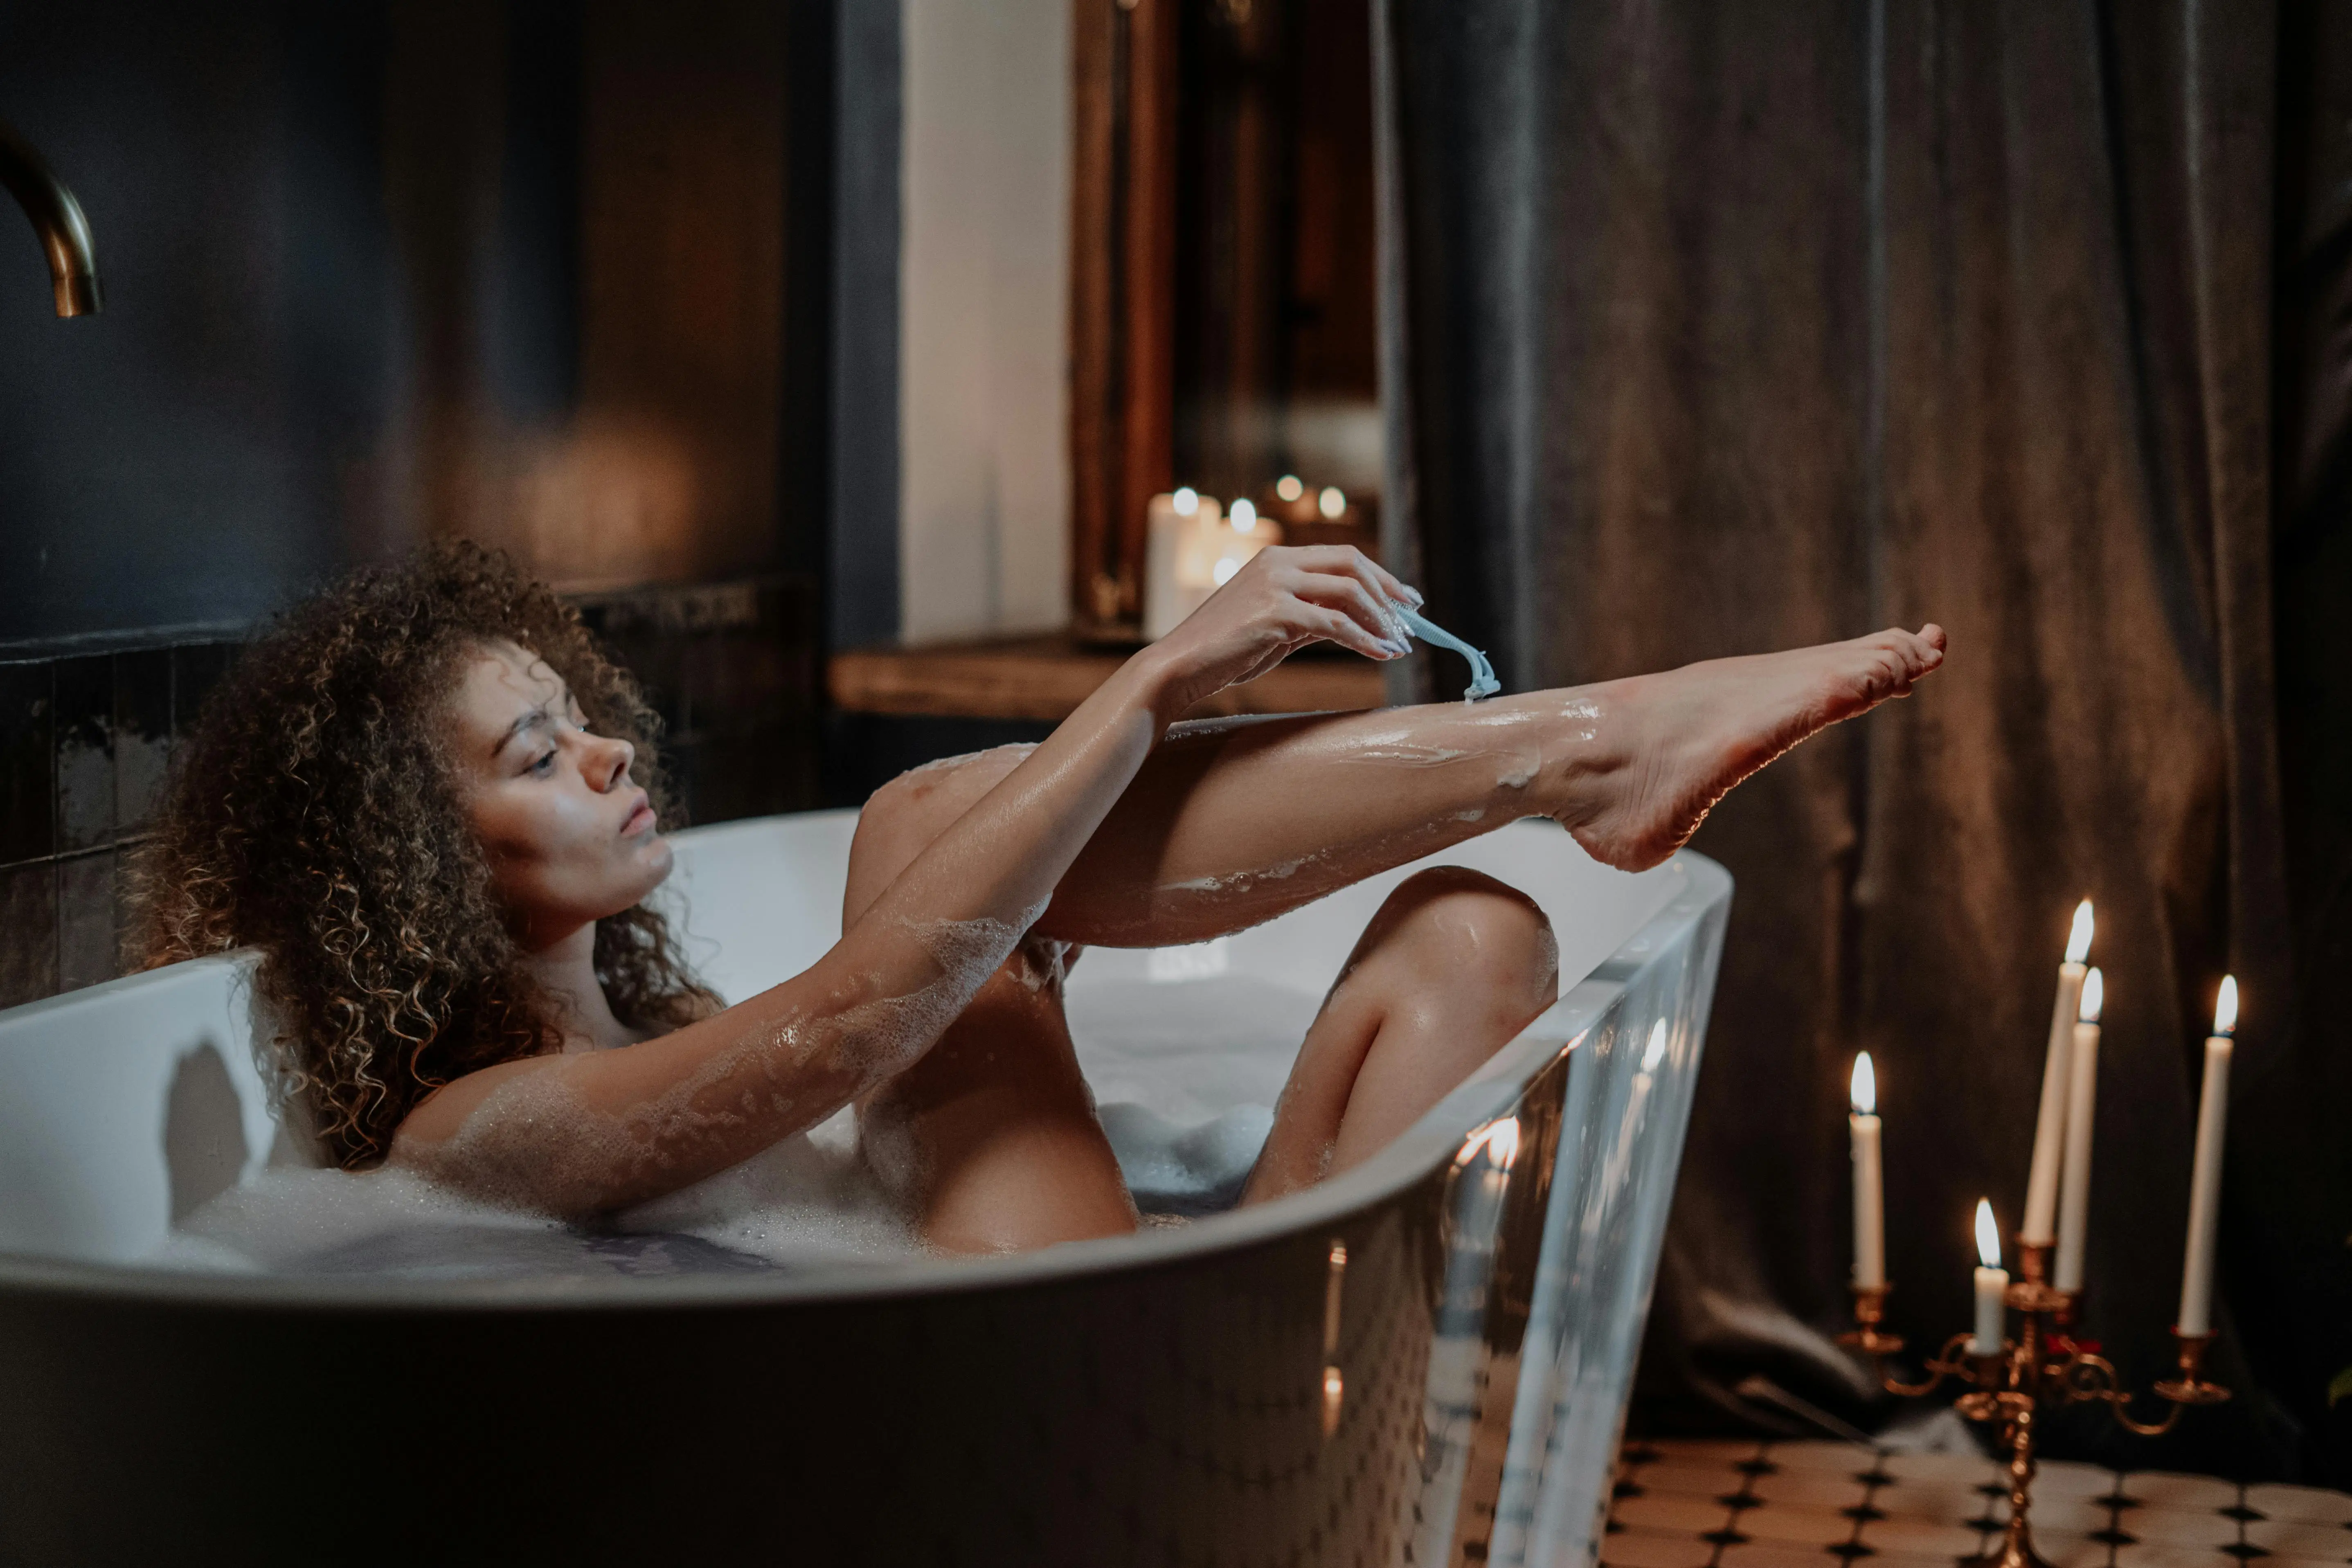 Imagem ilustrativa de mulher se depilando na banheira com lamina de barbear